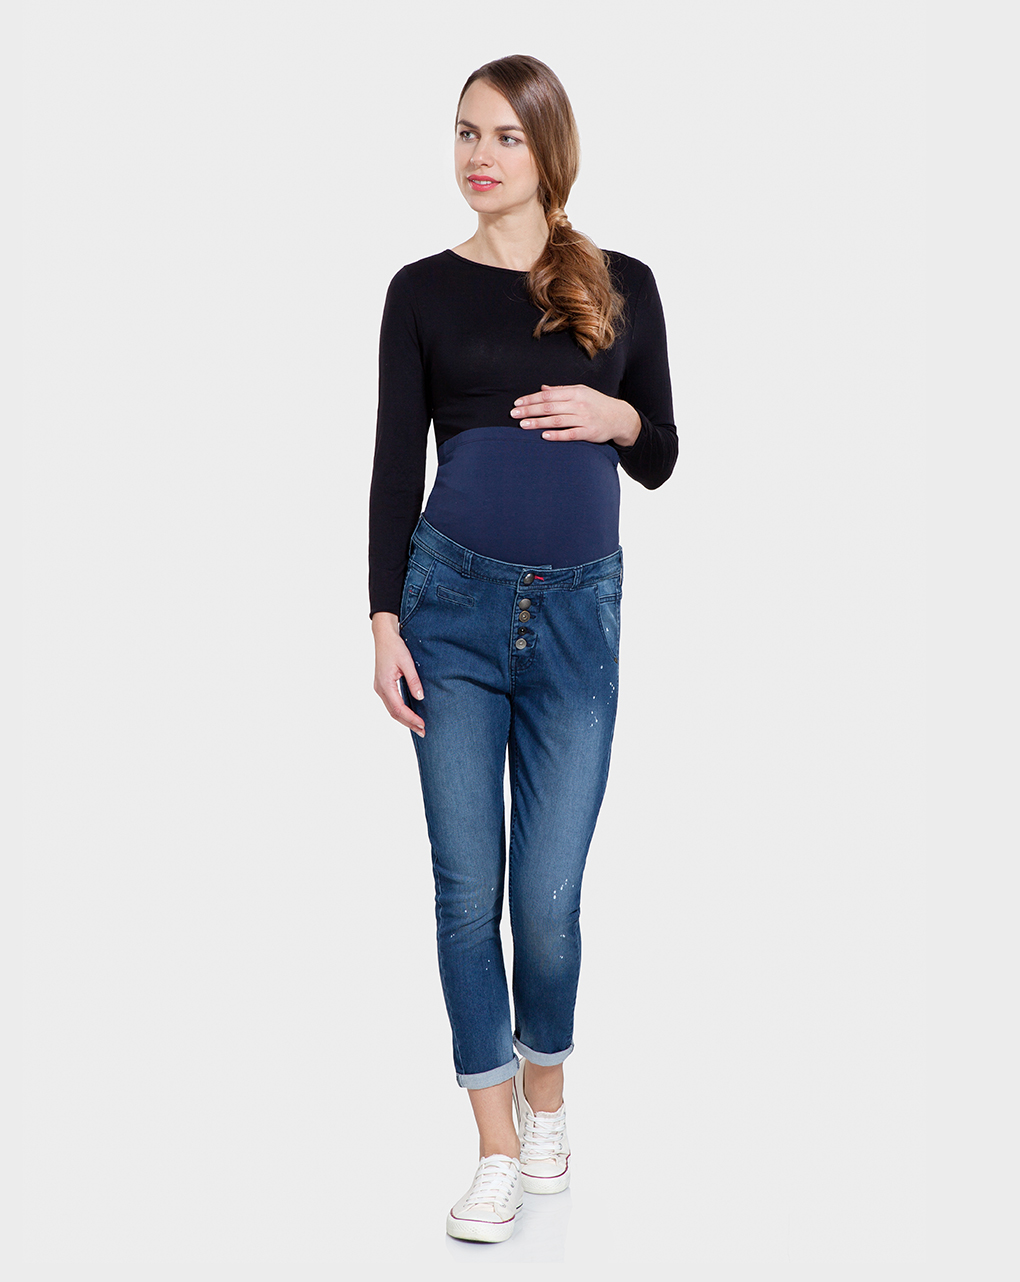 γυναικείο παντελόνι εγκυμοσύνης denim μπλε σκούρο - Prénatal